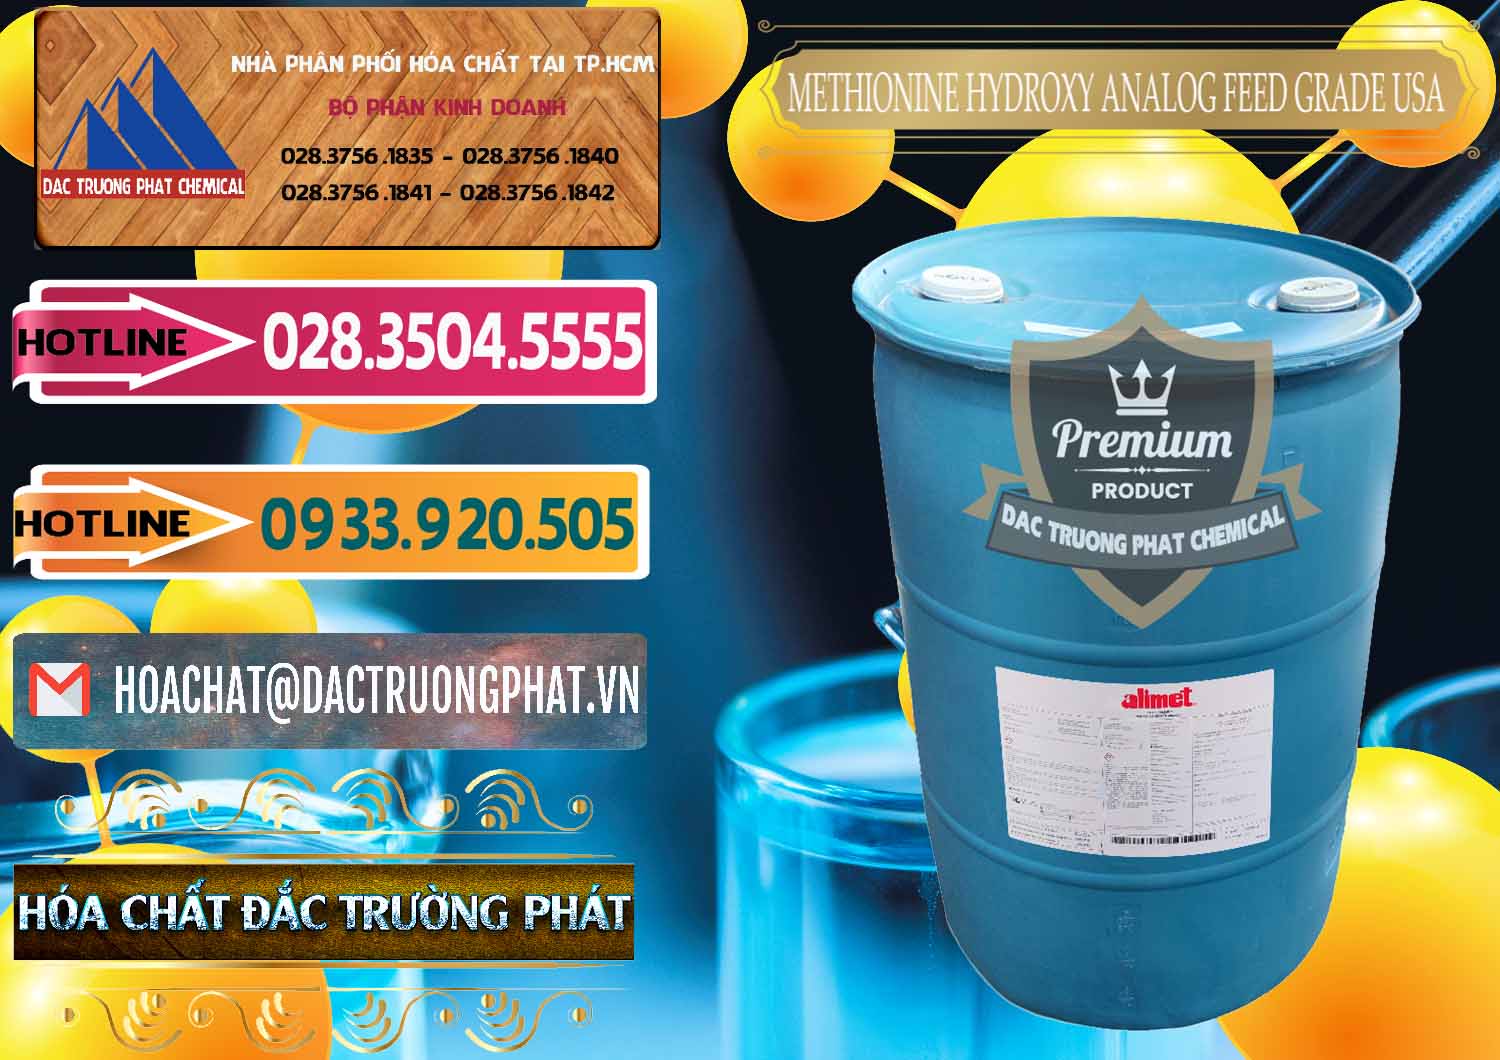 Nơi kinh doanh và bán Methionine Nước - Dạng Lỏng Novus Alimet Mỹ USA - 0316 - Cty phân phối - bán hóa chất tại TP.HCM - dactruongphat.vn